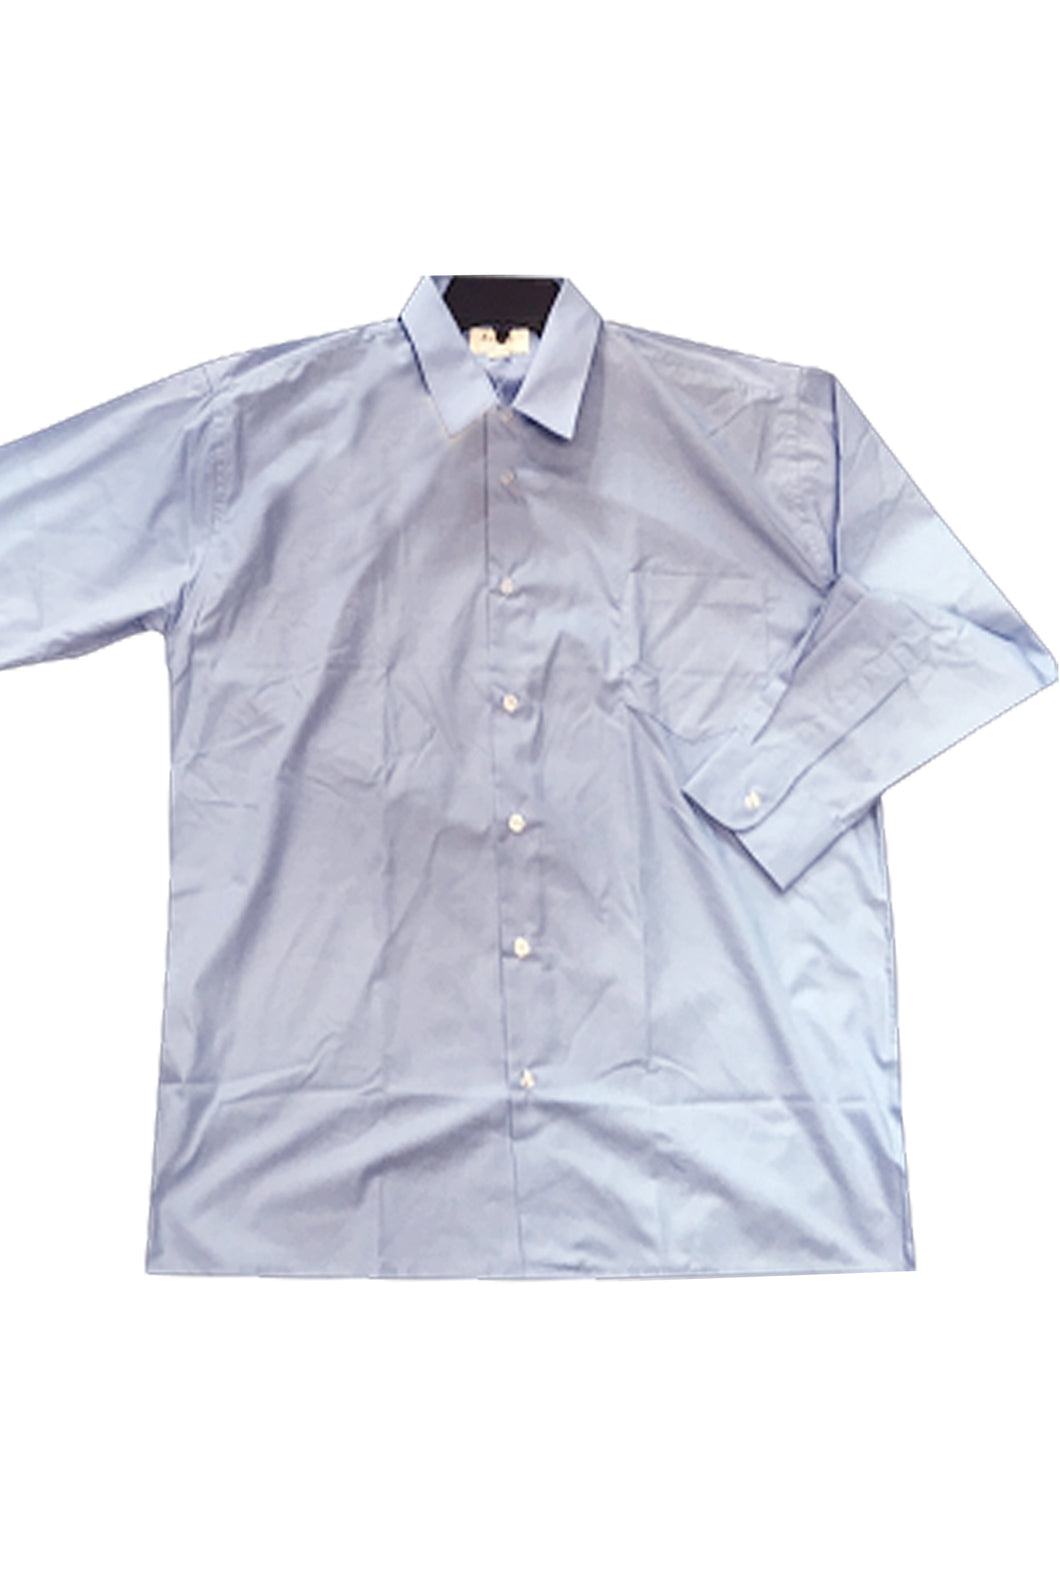 訂造長袖恤衫 設計恤衫款式 單袋設計 訂購團體制服襯衫 恤衫製衣廠  HK-Hanyeung-003